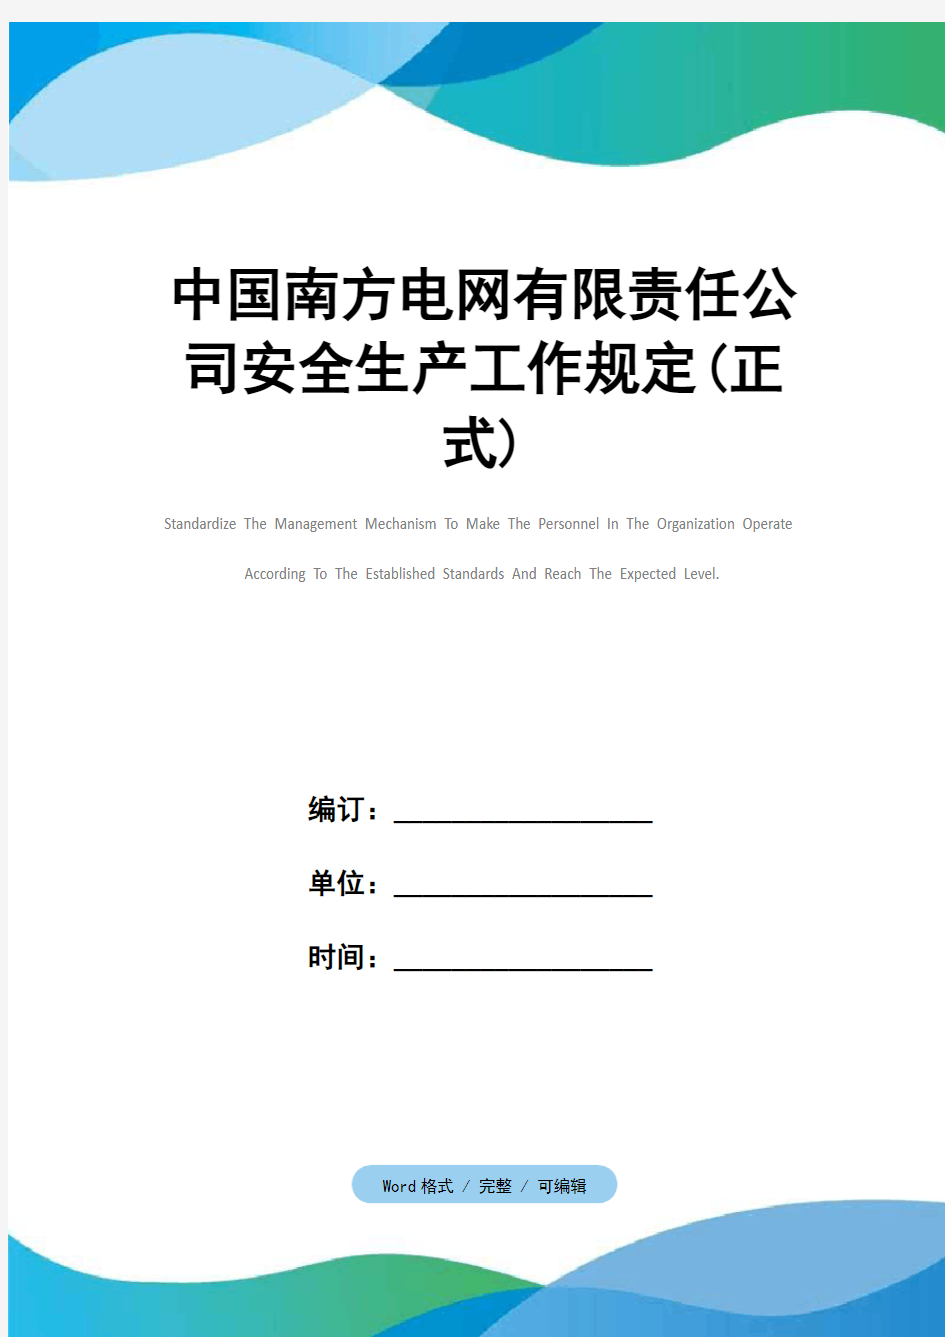 中国南方电网有限责任公司安全生产工作规定(正式)